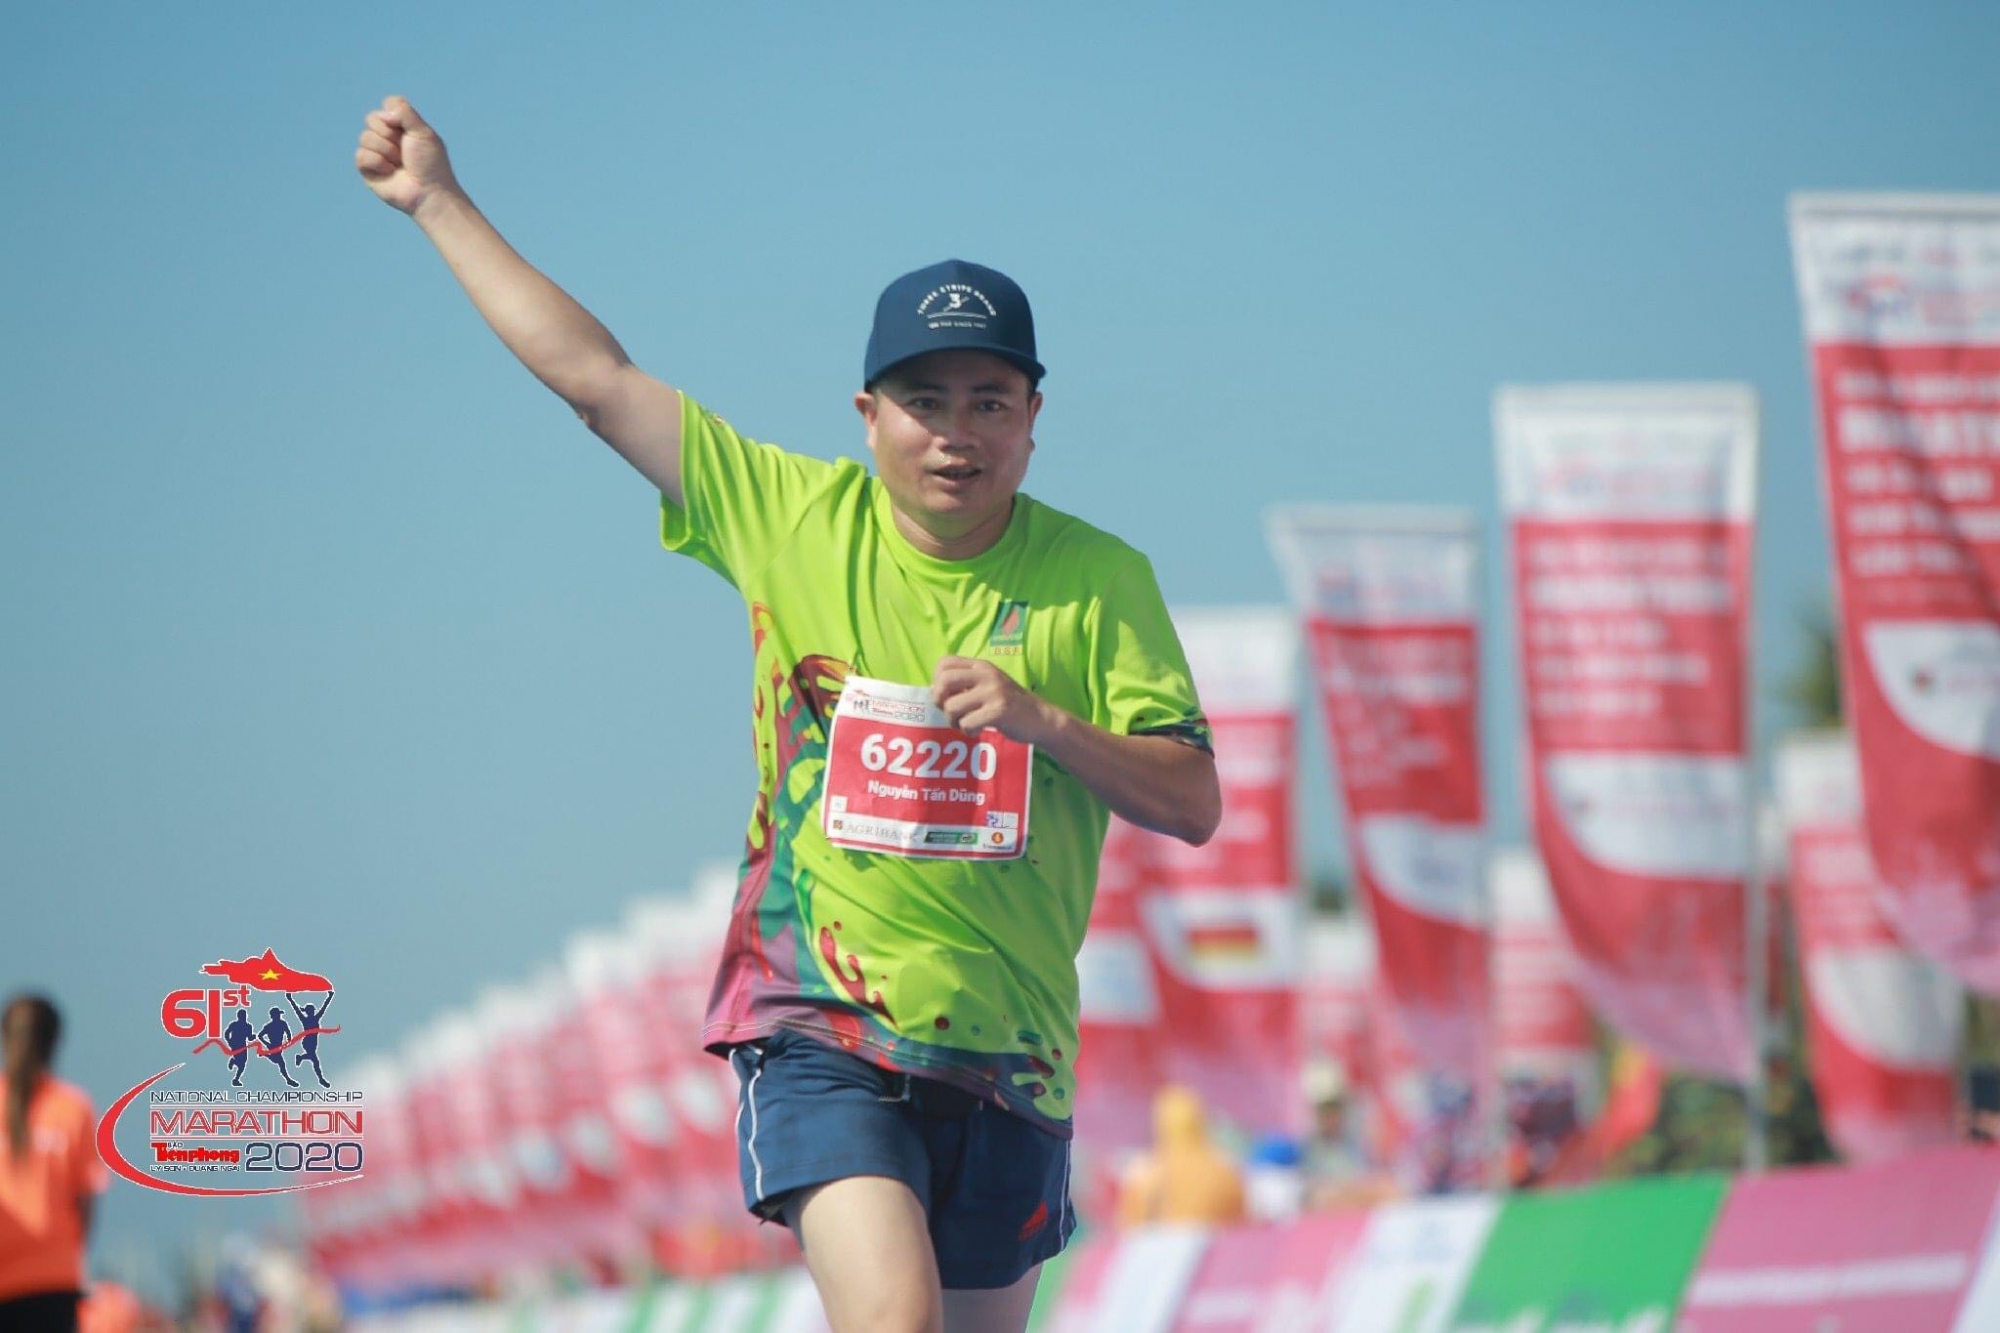 clb viet da bsr tham du giai marathon tien phong 2020